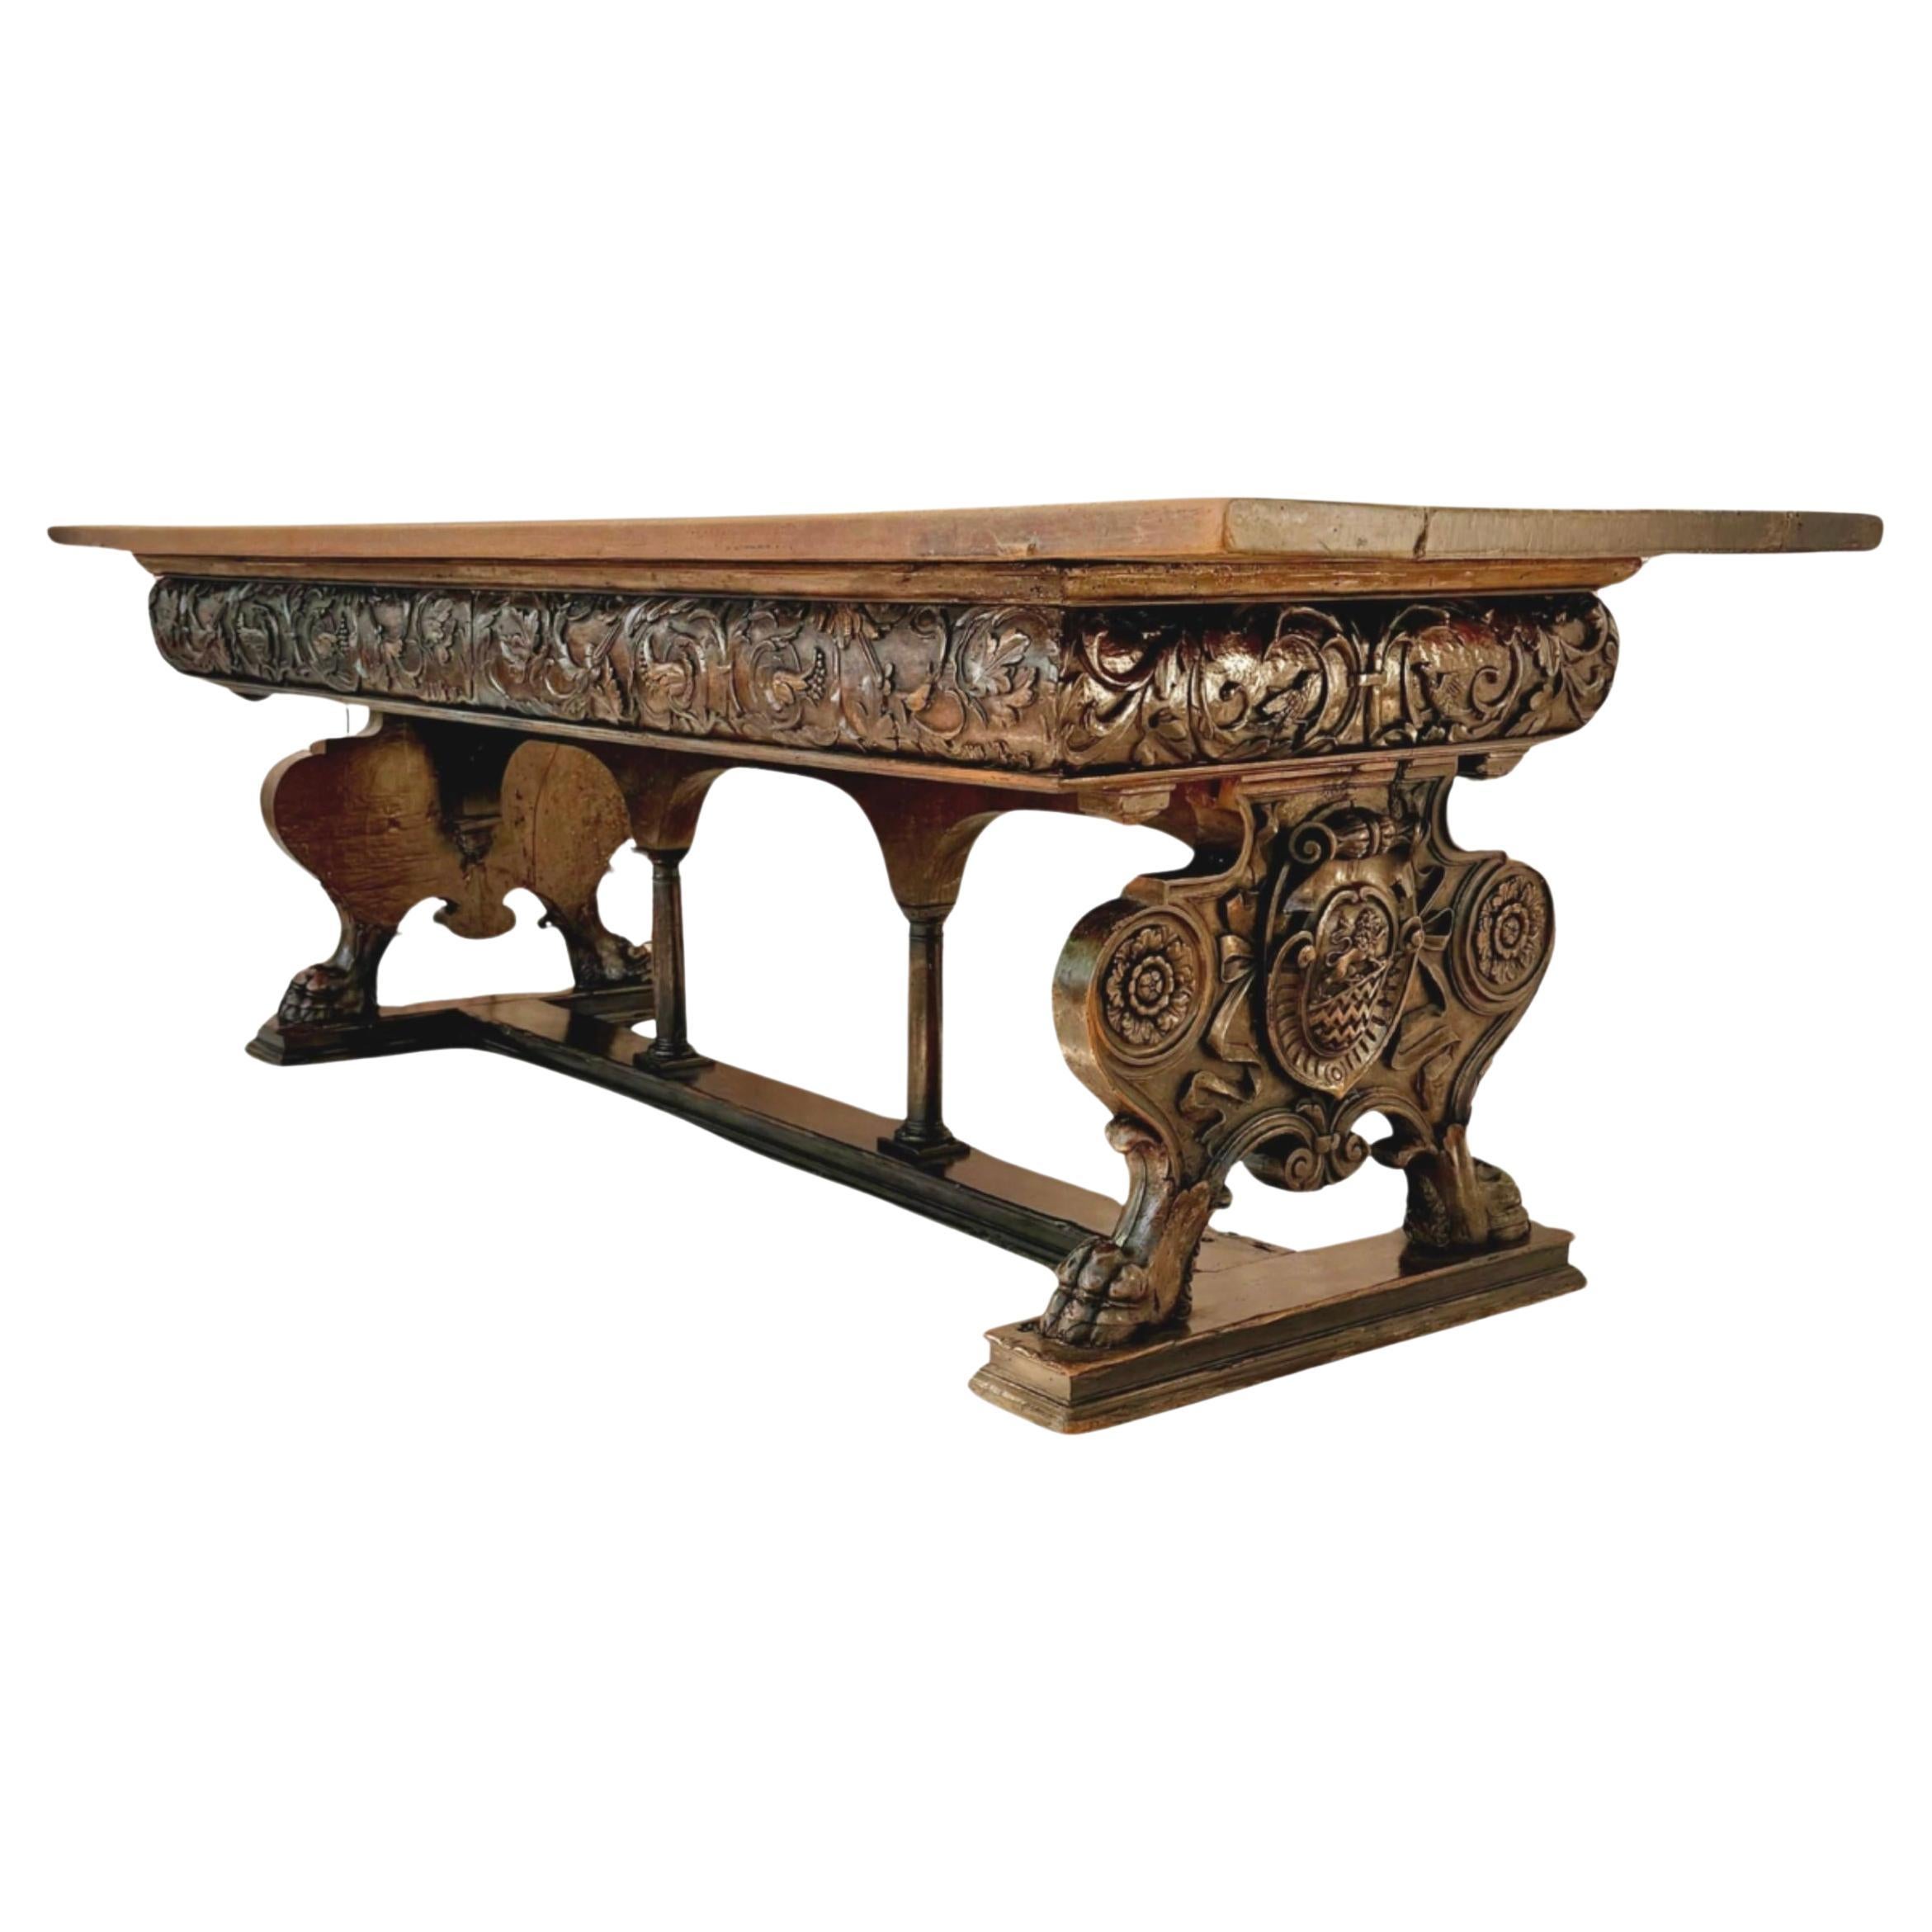 Magnifique table à tréteaux en noyer de la Renaissance italienne du XVIIe siècle